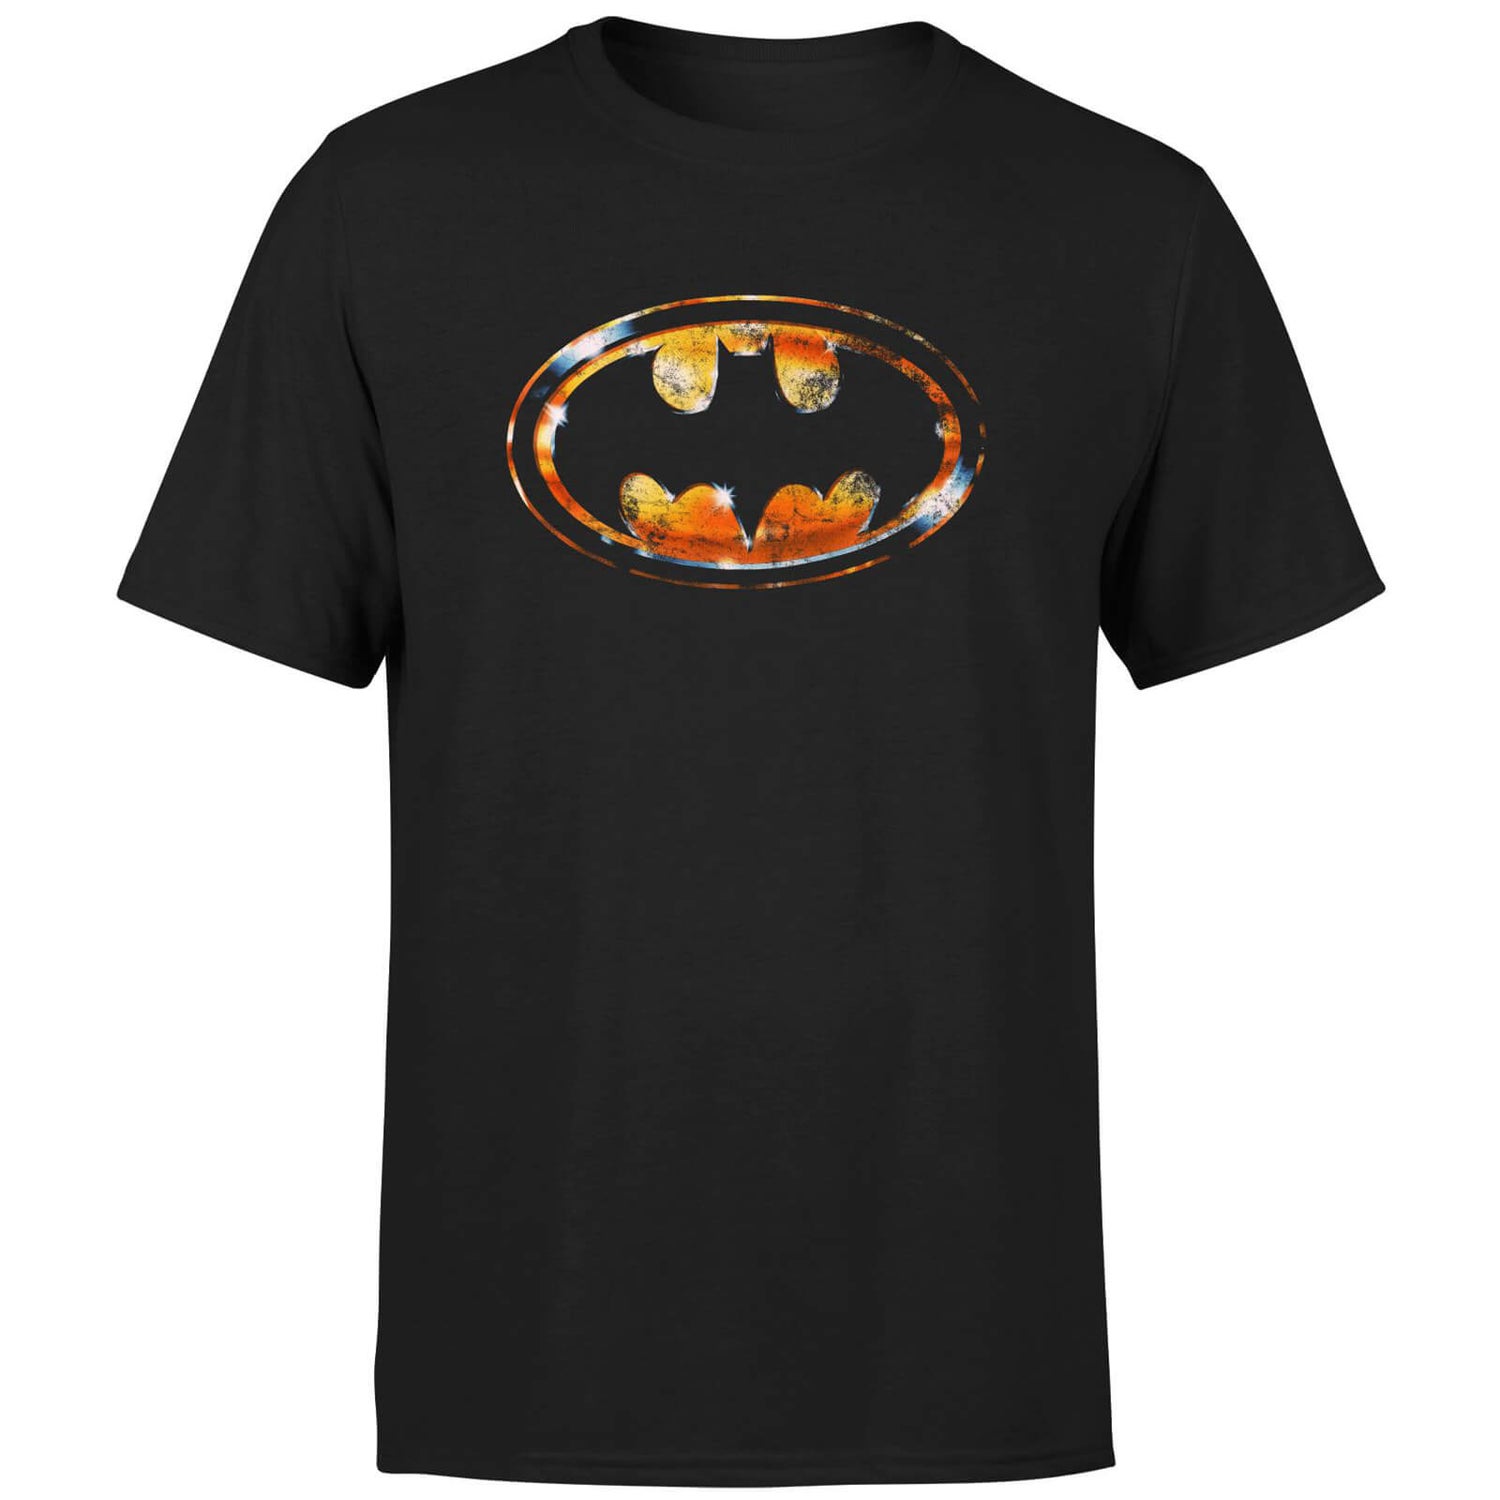 BATMAN Bat Logo Distressed Men's T-Shirt - Black